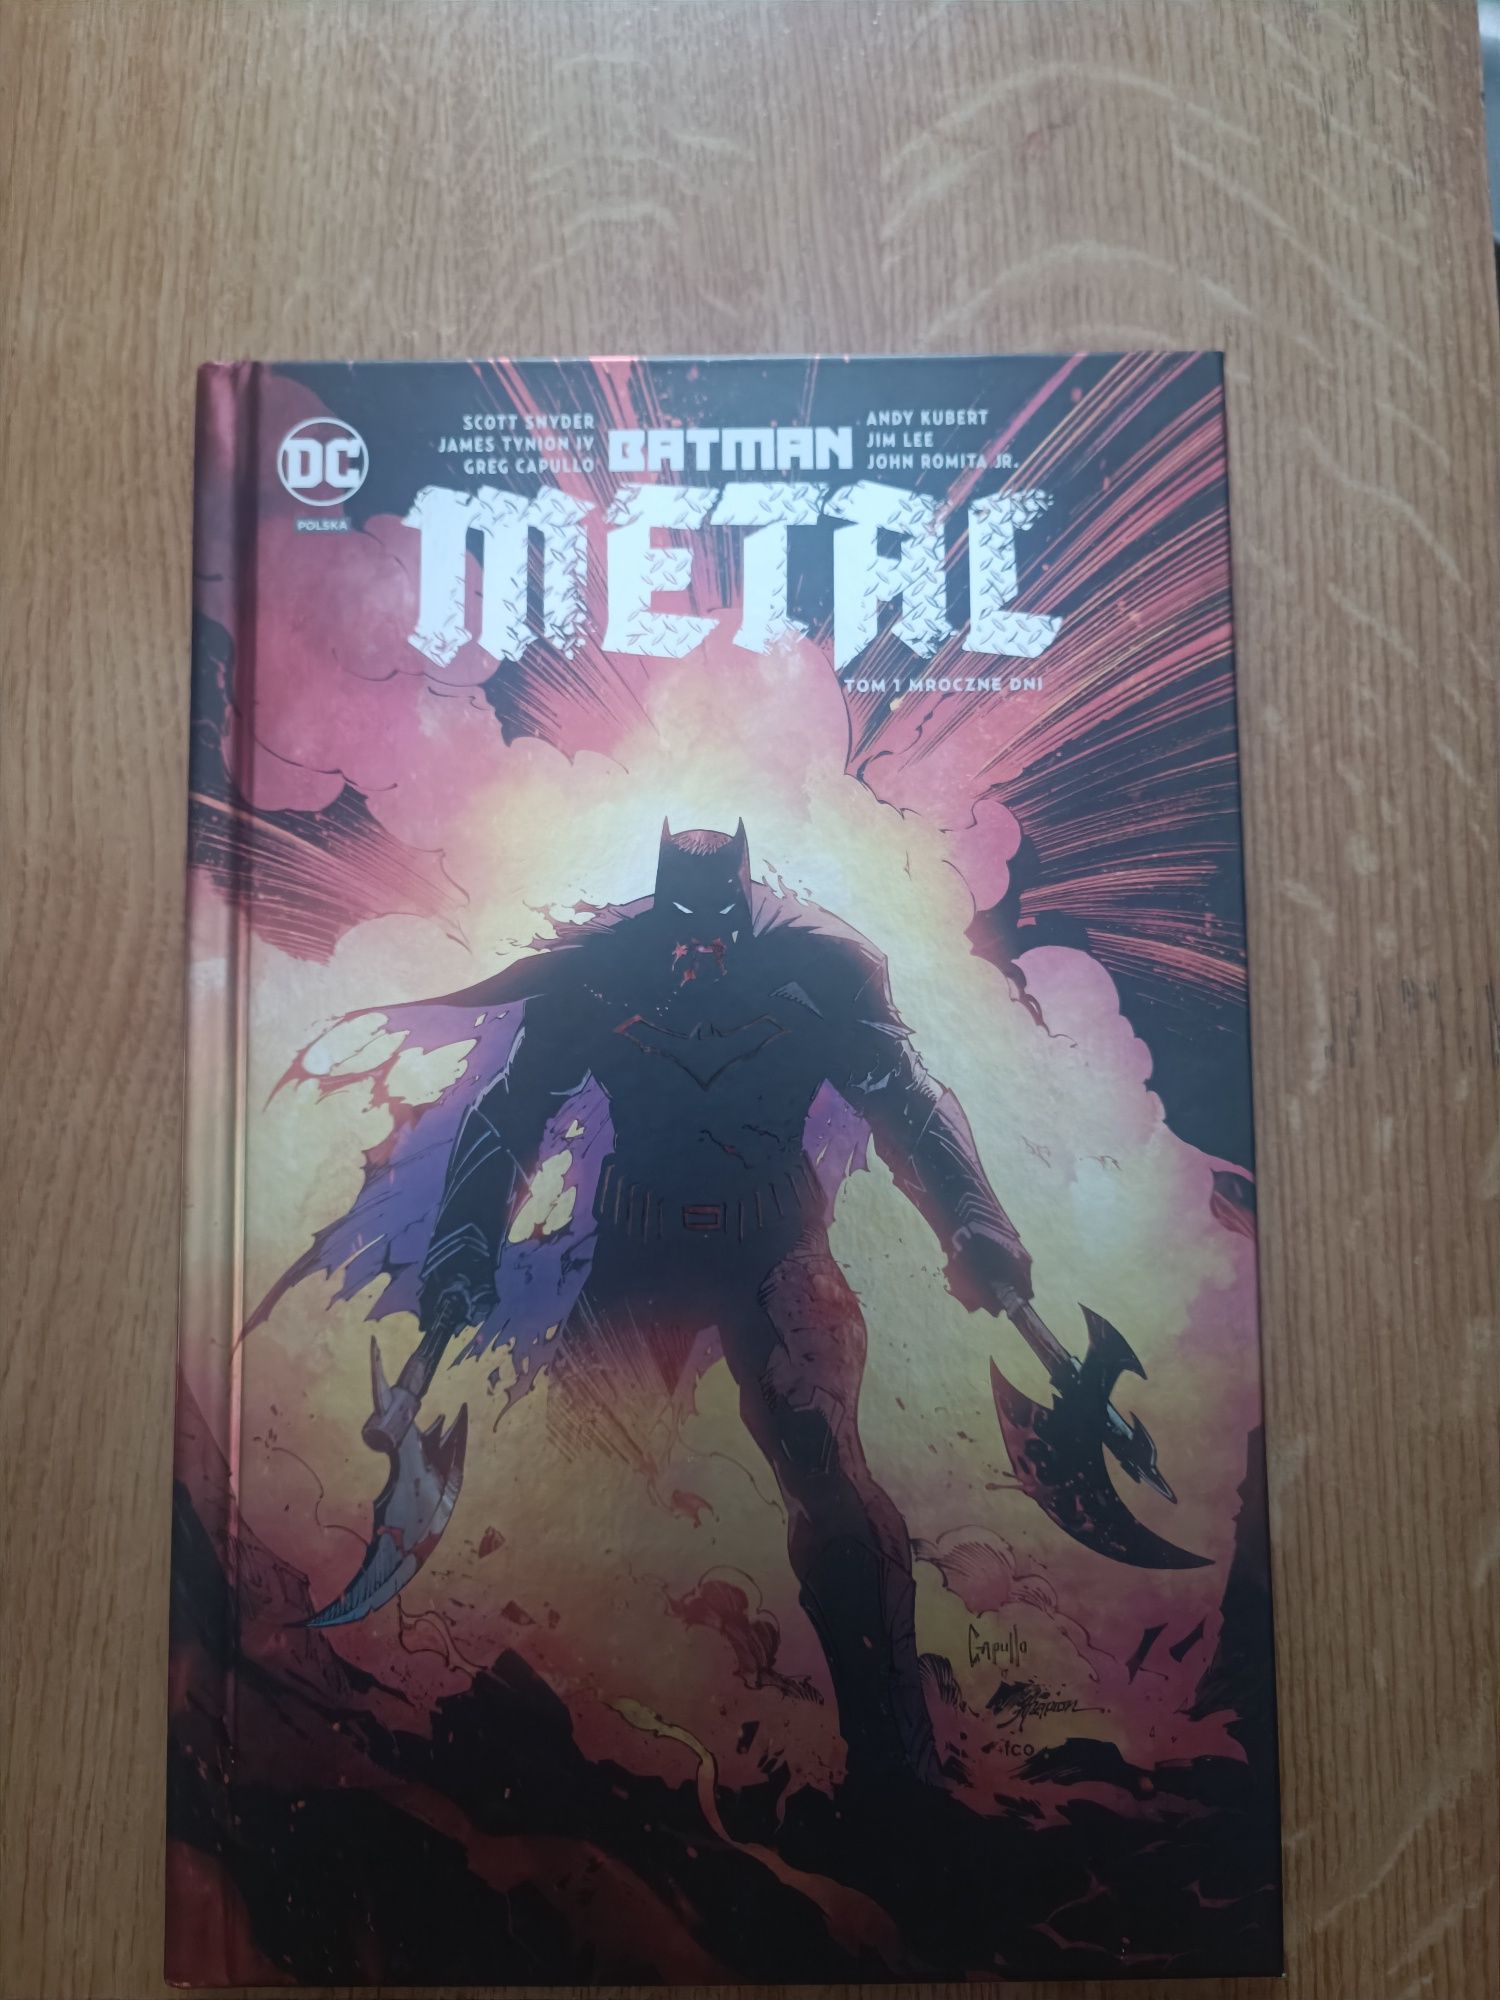 Komiksy zestaw punisher i batman metal